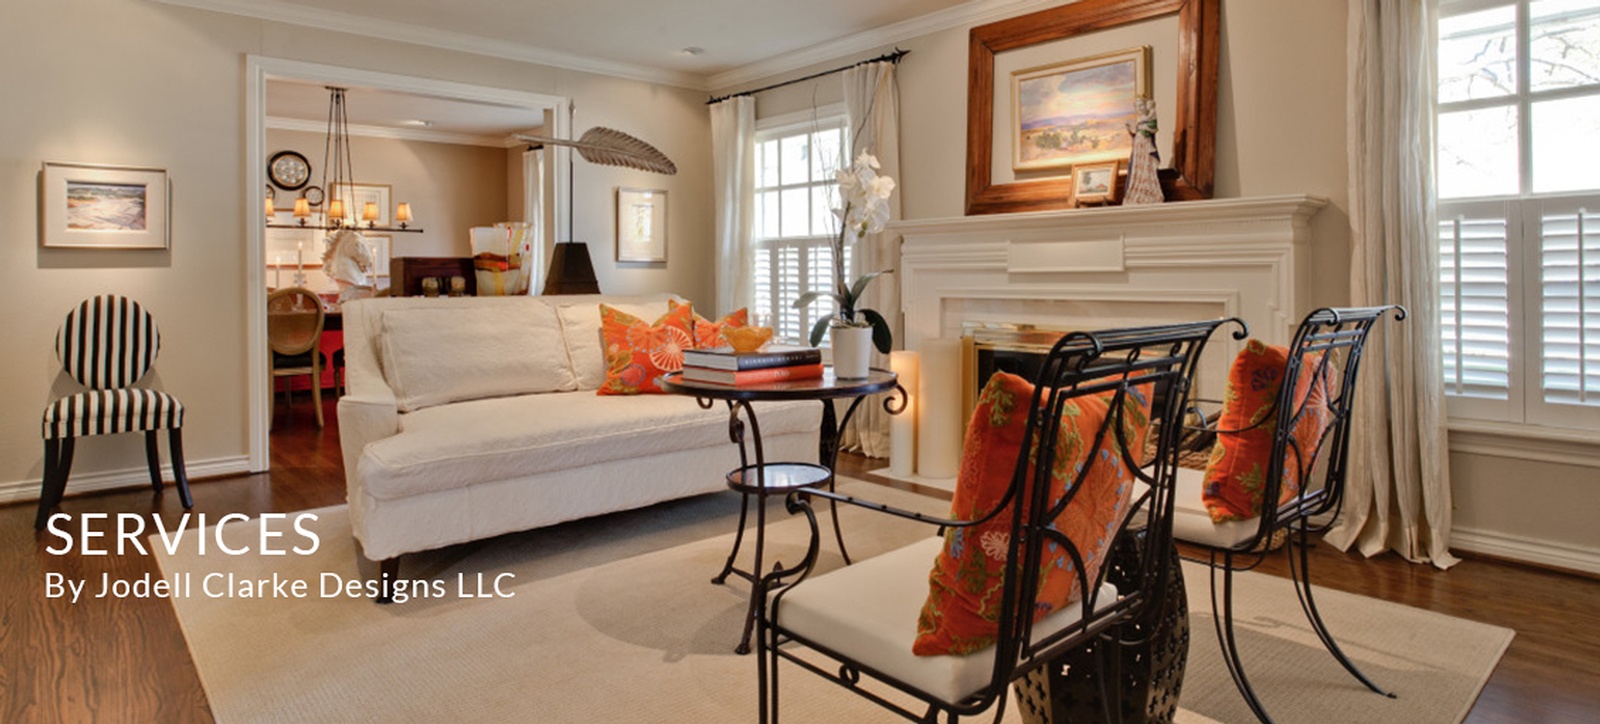 Interior Design Services by Jodell Clarke Designs LLC - Dallas Luxury Interior Stylist